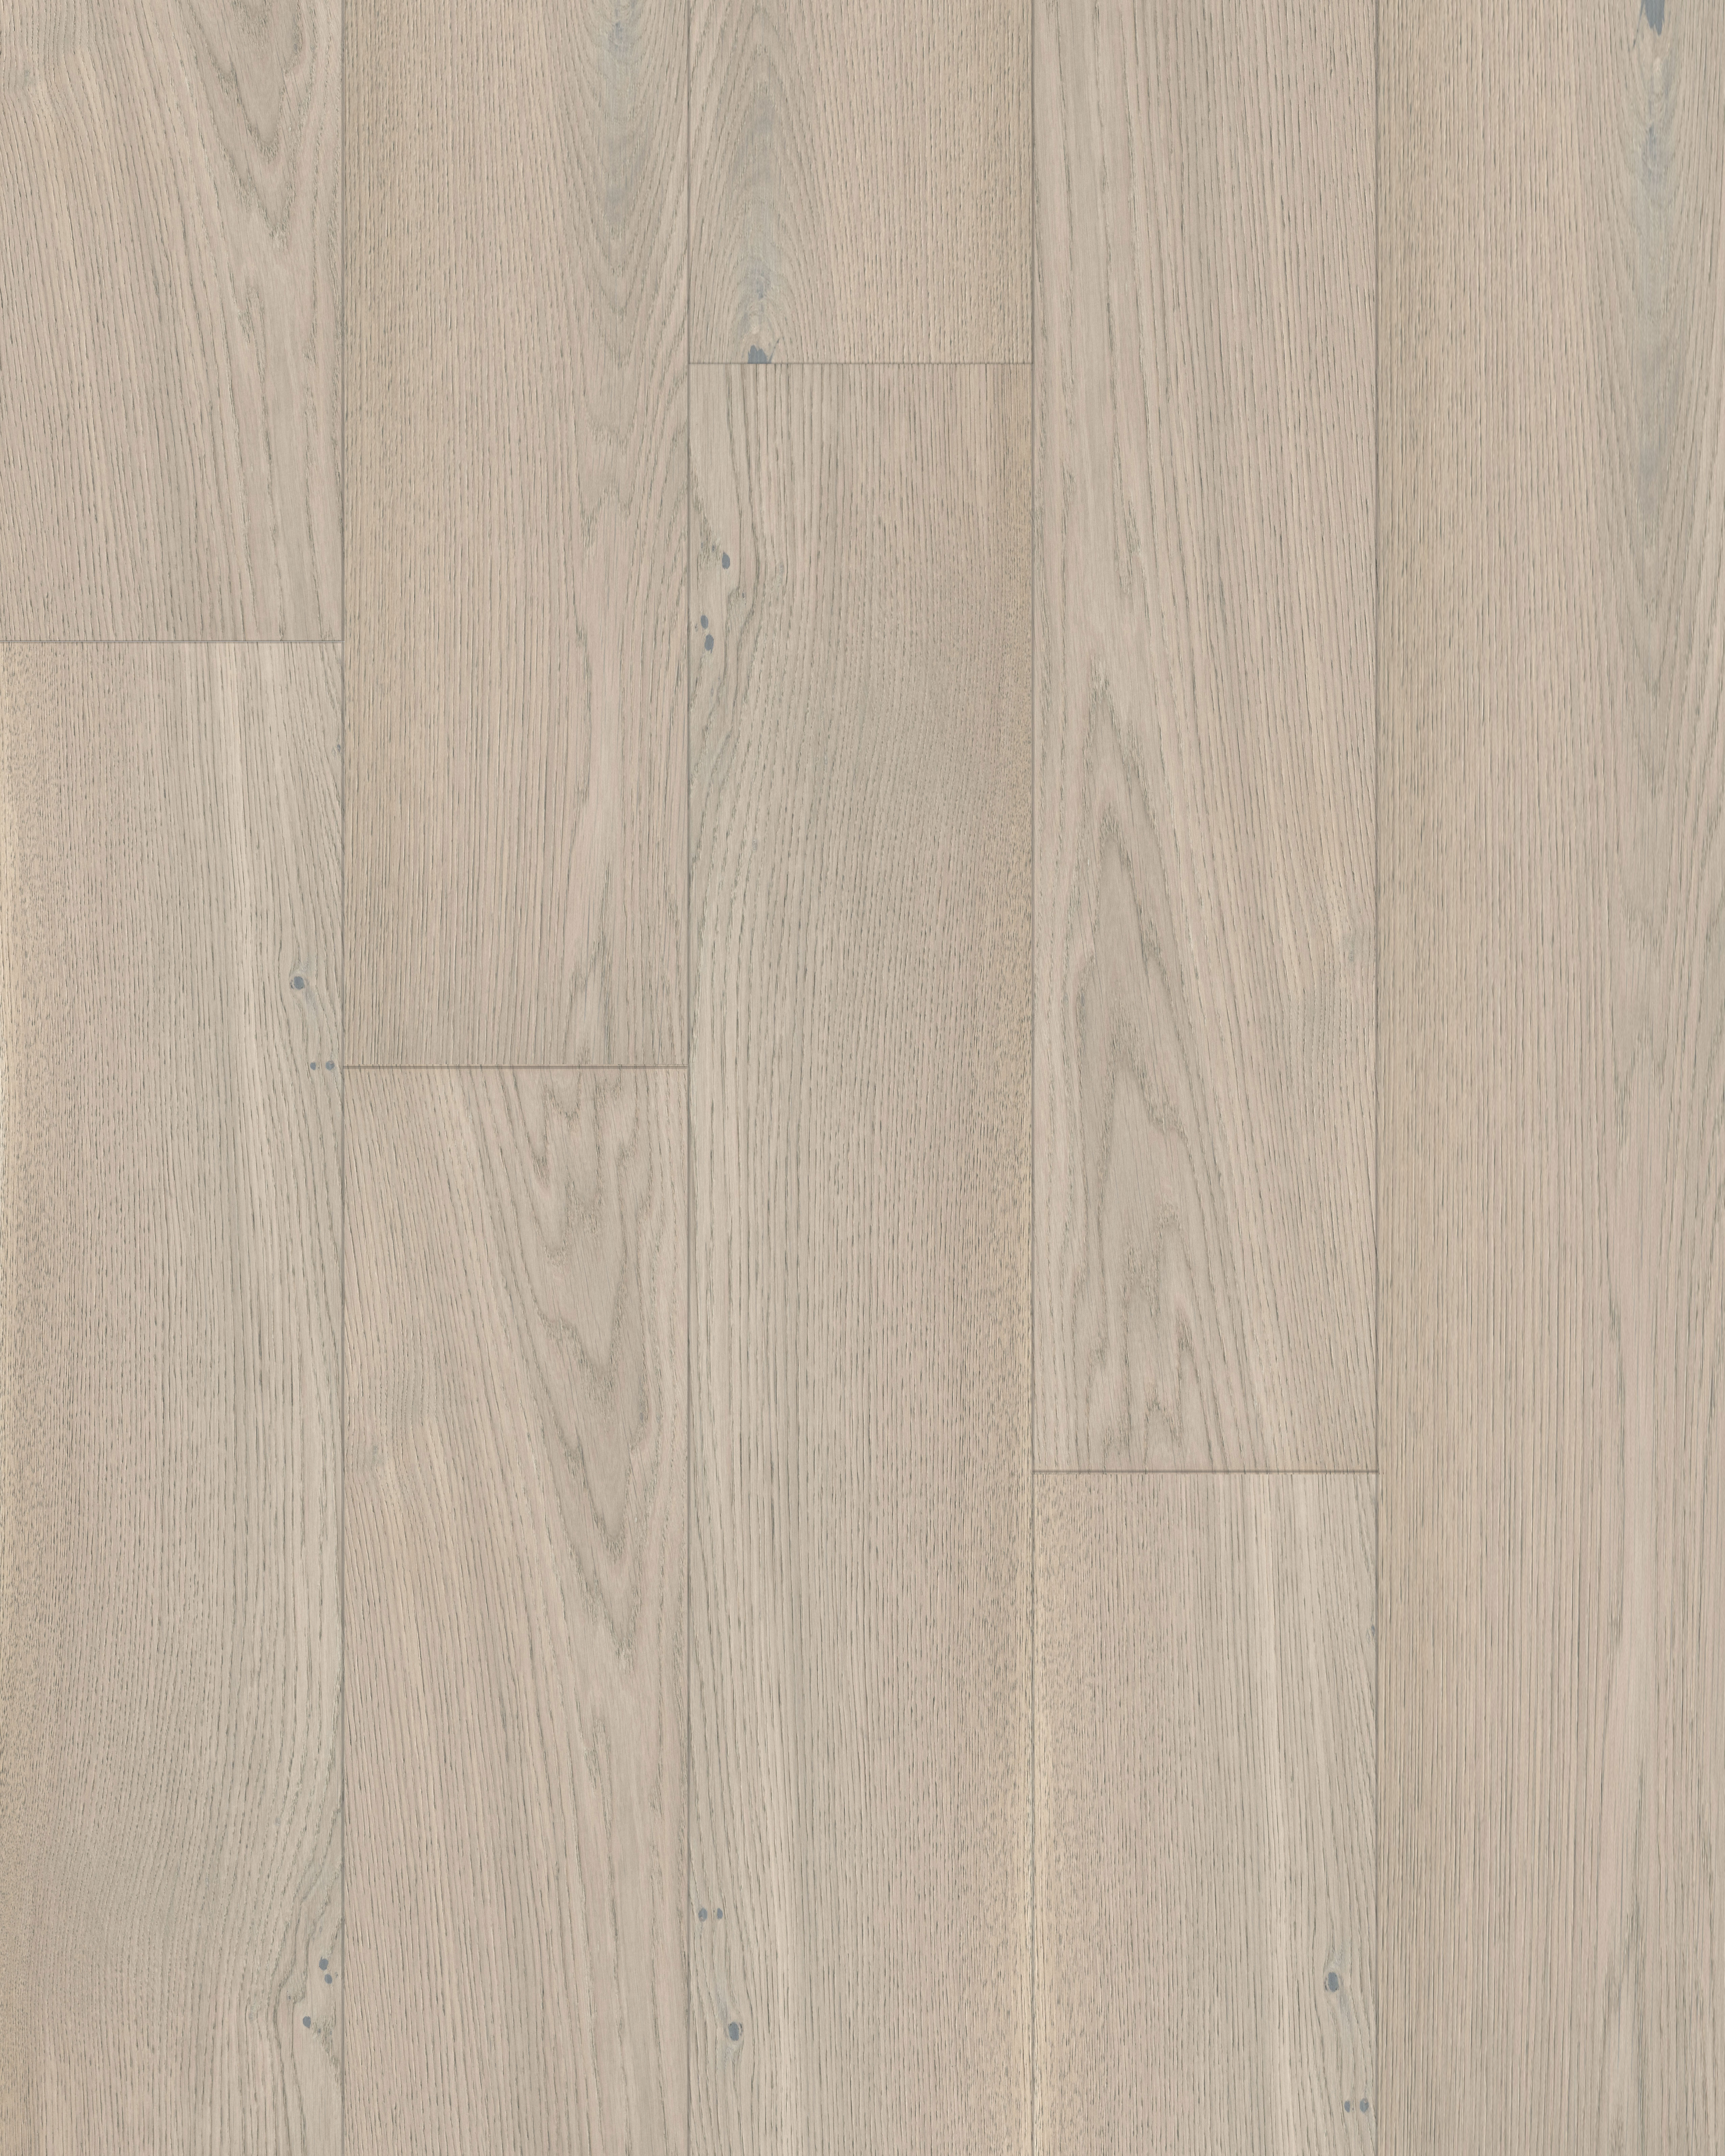 Forté Moda Stretto Collection - 15mm narrow European Oak Flooring